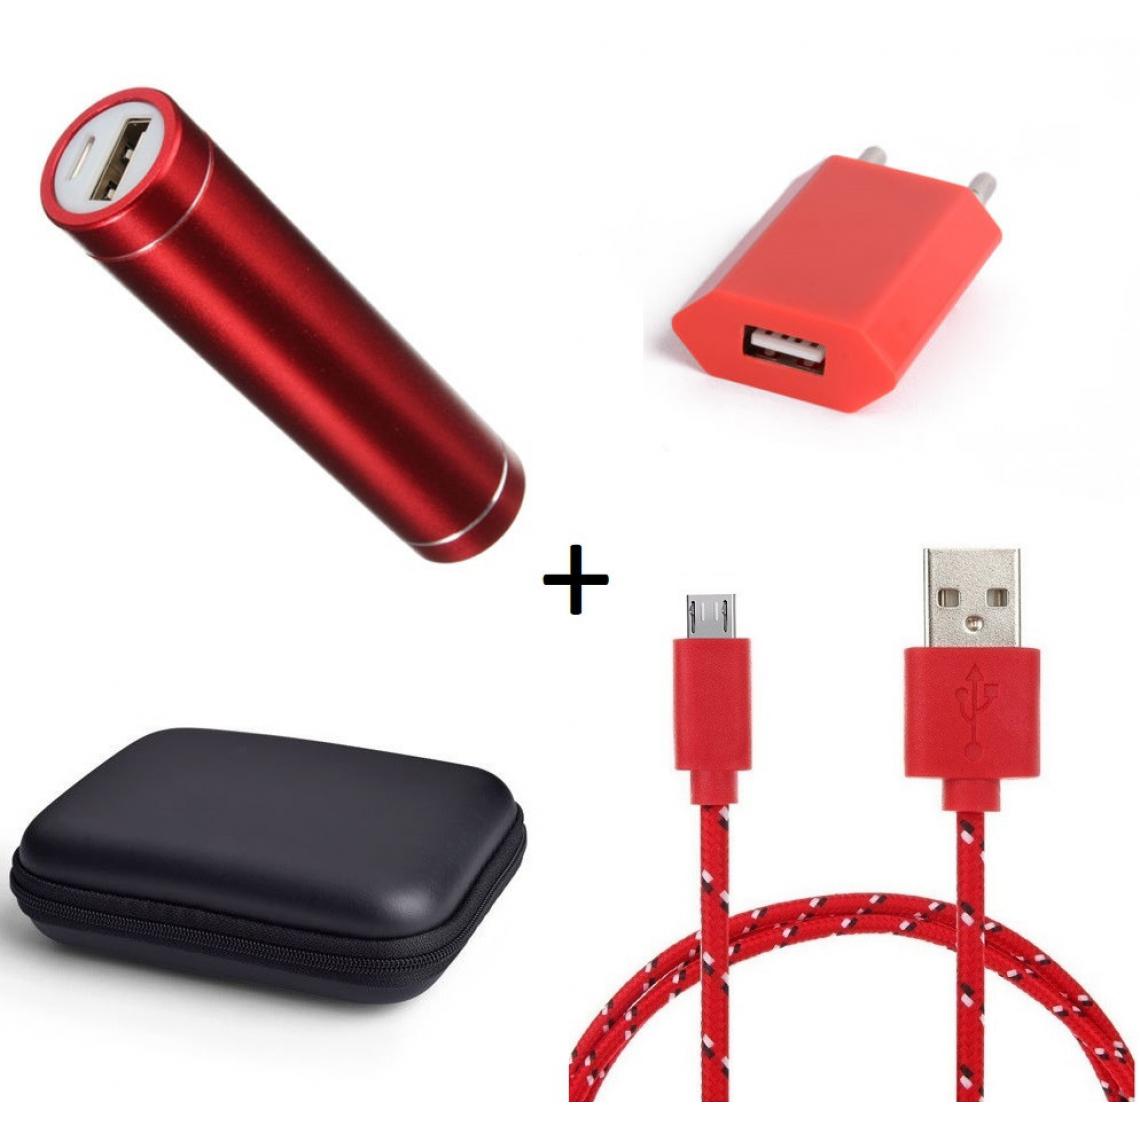 Shot - Pack pour WIKO View 3 (Cable Chargeur Micro USB Tresse 3m + Pochette + Batterie + Prise Secteur) Android (ROUGE) - Chargeur secteur téléphone